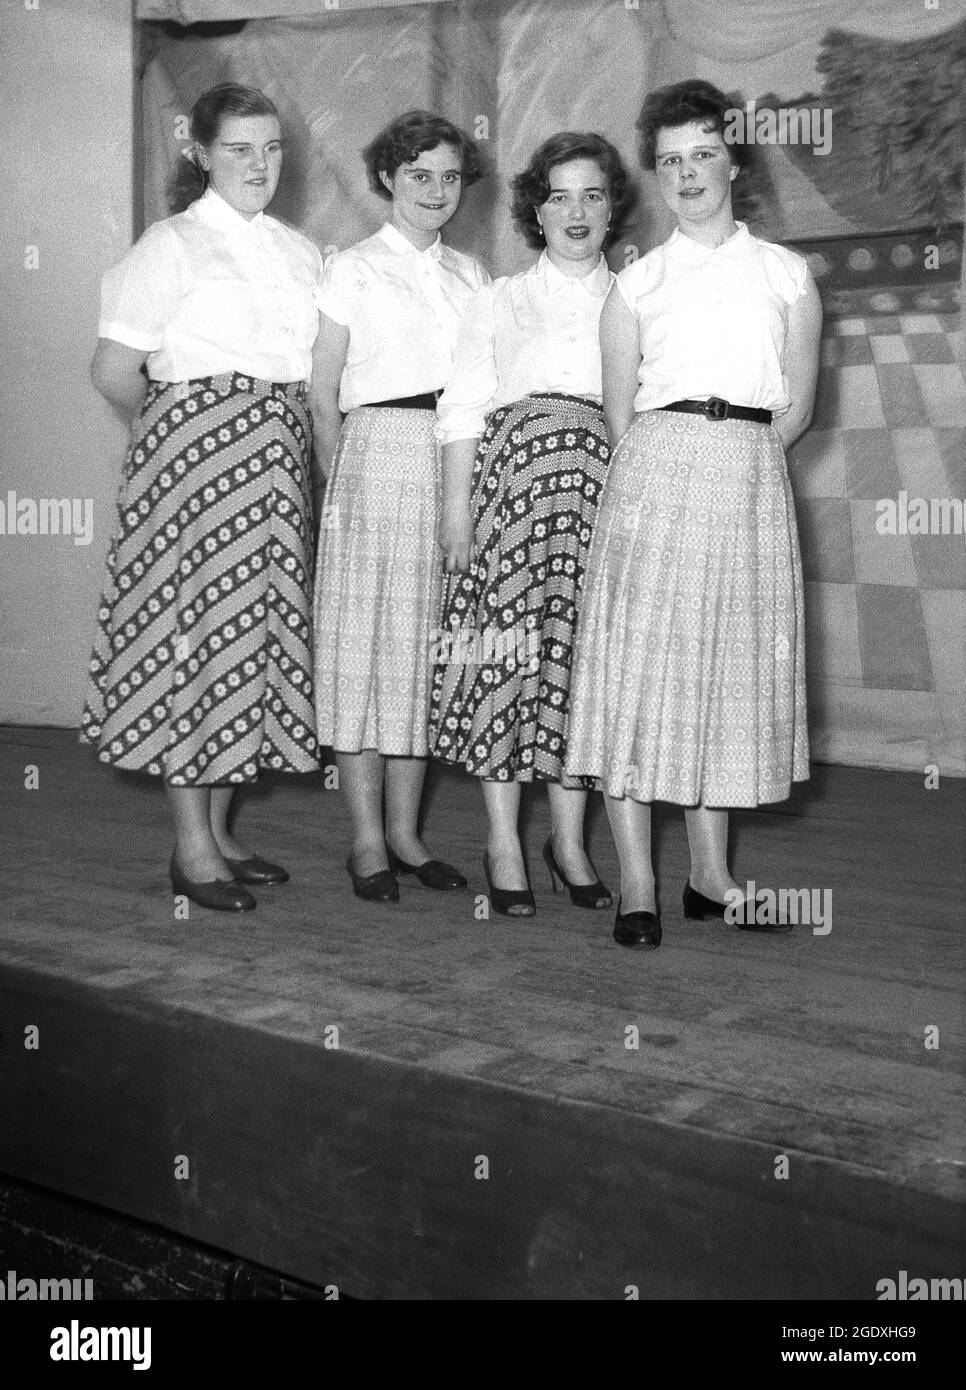 1957, historique, quatre femmes interprètes en chemisiers et longues jupes apparaissant dans la pantomine Aladdin stand sur la scène pour leur photo, Angleterre, Royaume-Uni. Banque D'Images